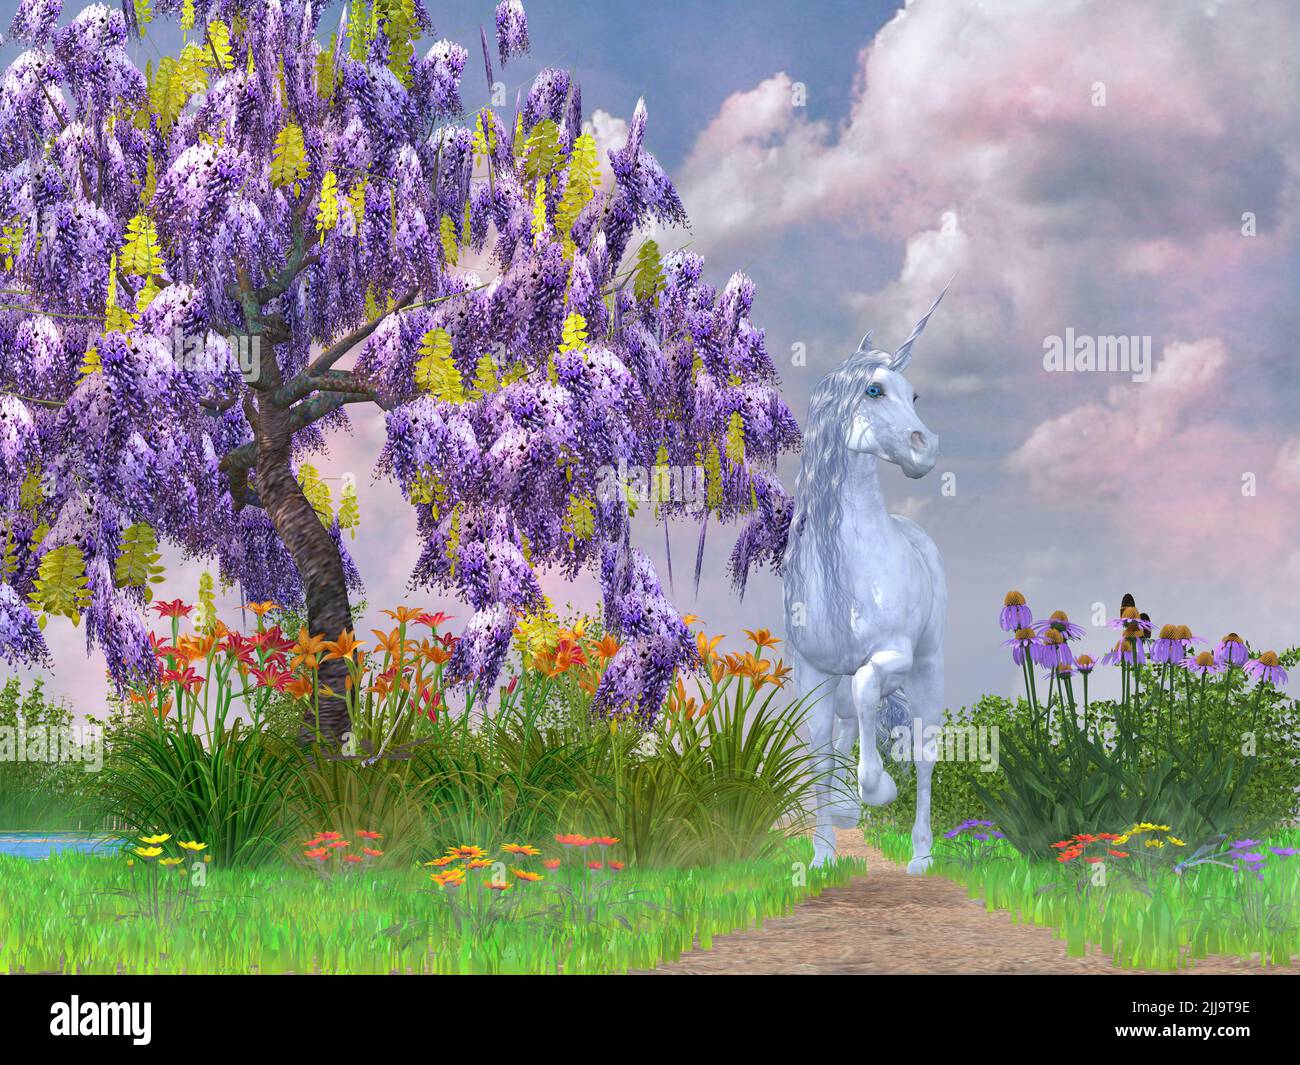 Une licorne blanche légendaire suit un chemin entouré de fleurs et d'un arbre de Wisteria violet. Banque D'Images